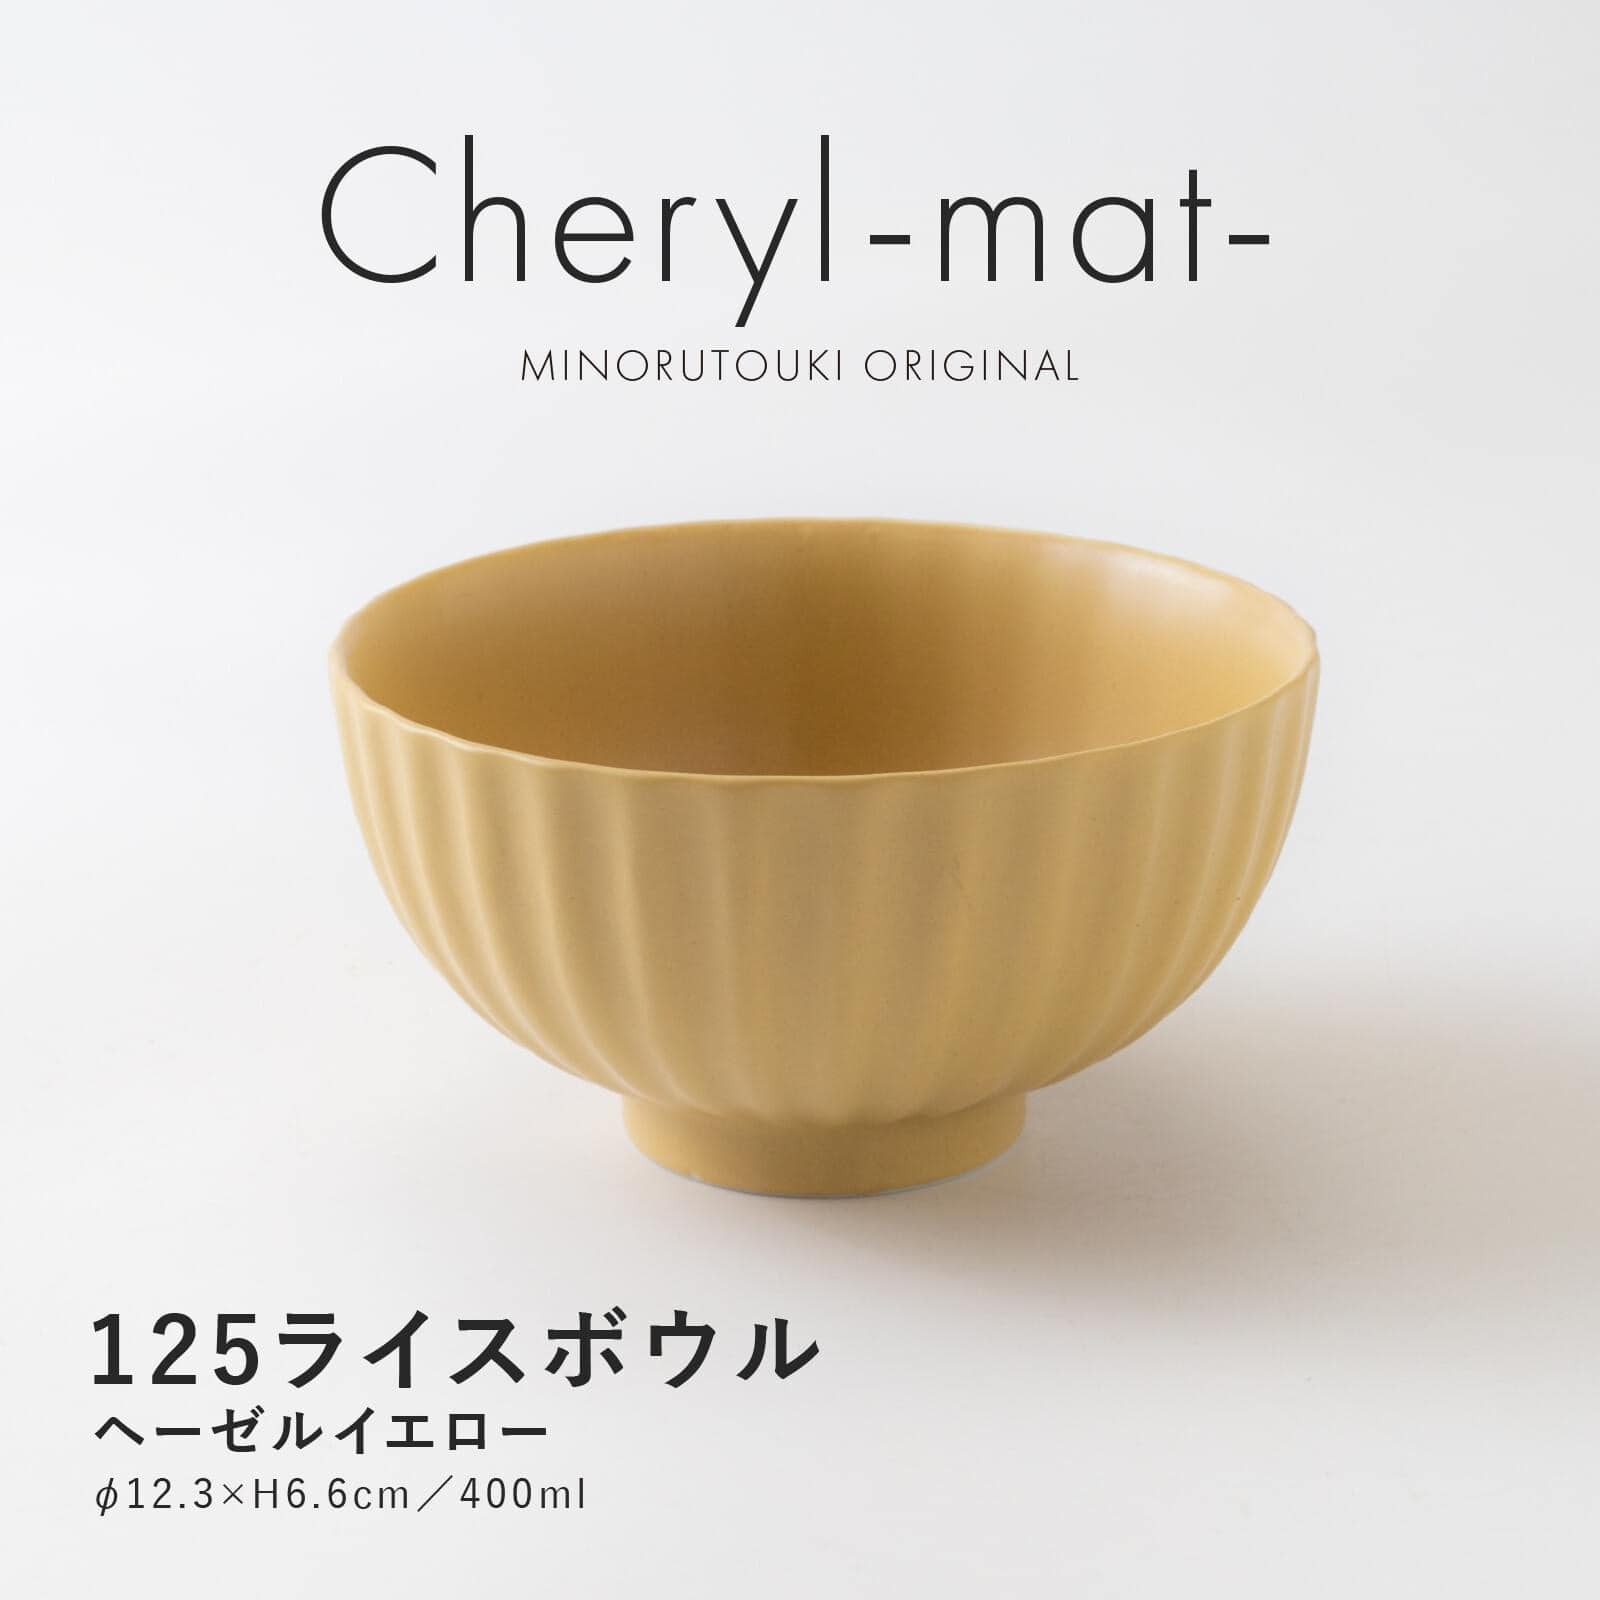 日本餐具 美濃燒瓷碗 Cheryl-mat-日本飯碗12.5cm 王球餐具 (2)